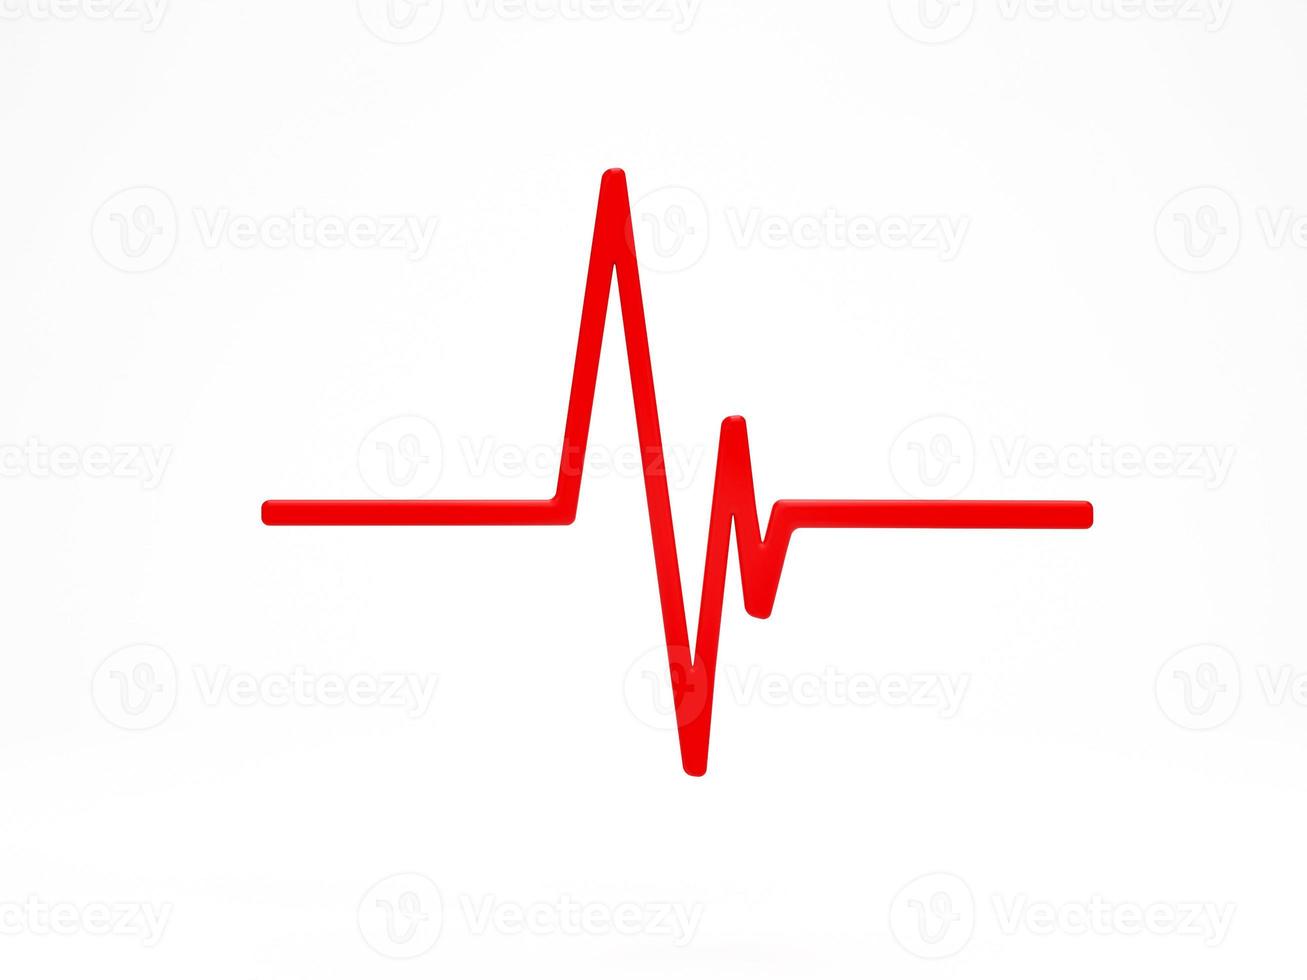 renderização 3D, ilustração 3D. ícone de linha de pulso do monitor de batimento cardíaco vermelho no fundo branco. ícone médico para aplicativos e sites médicos. foto